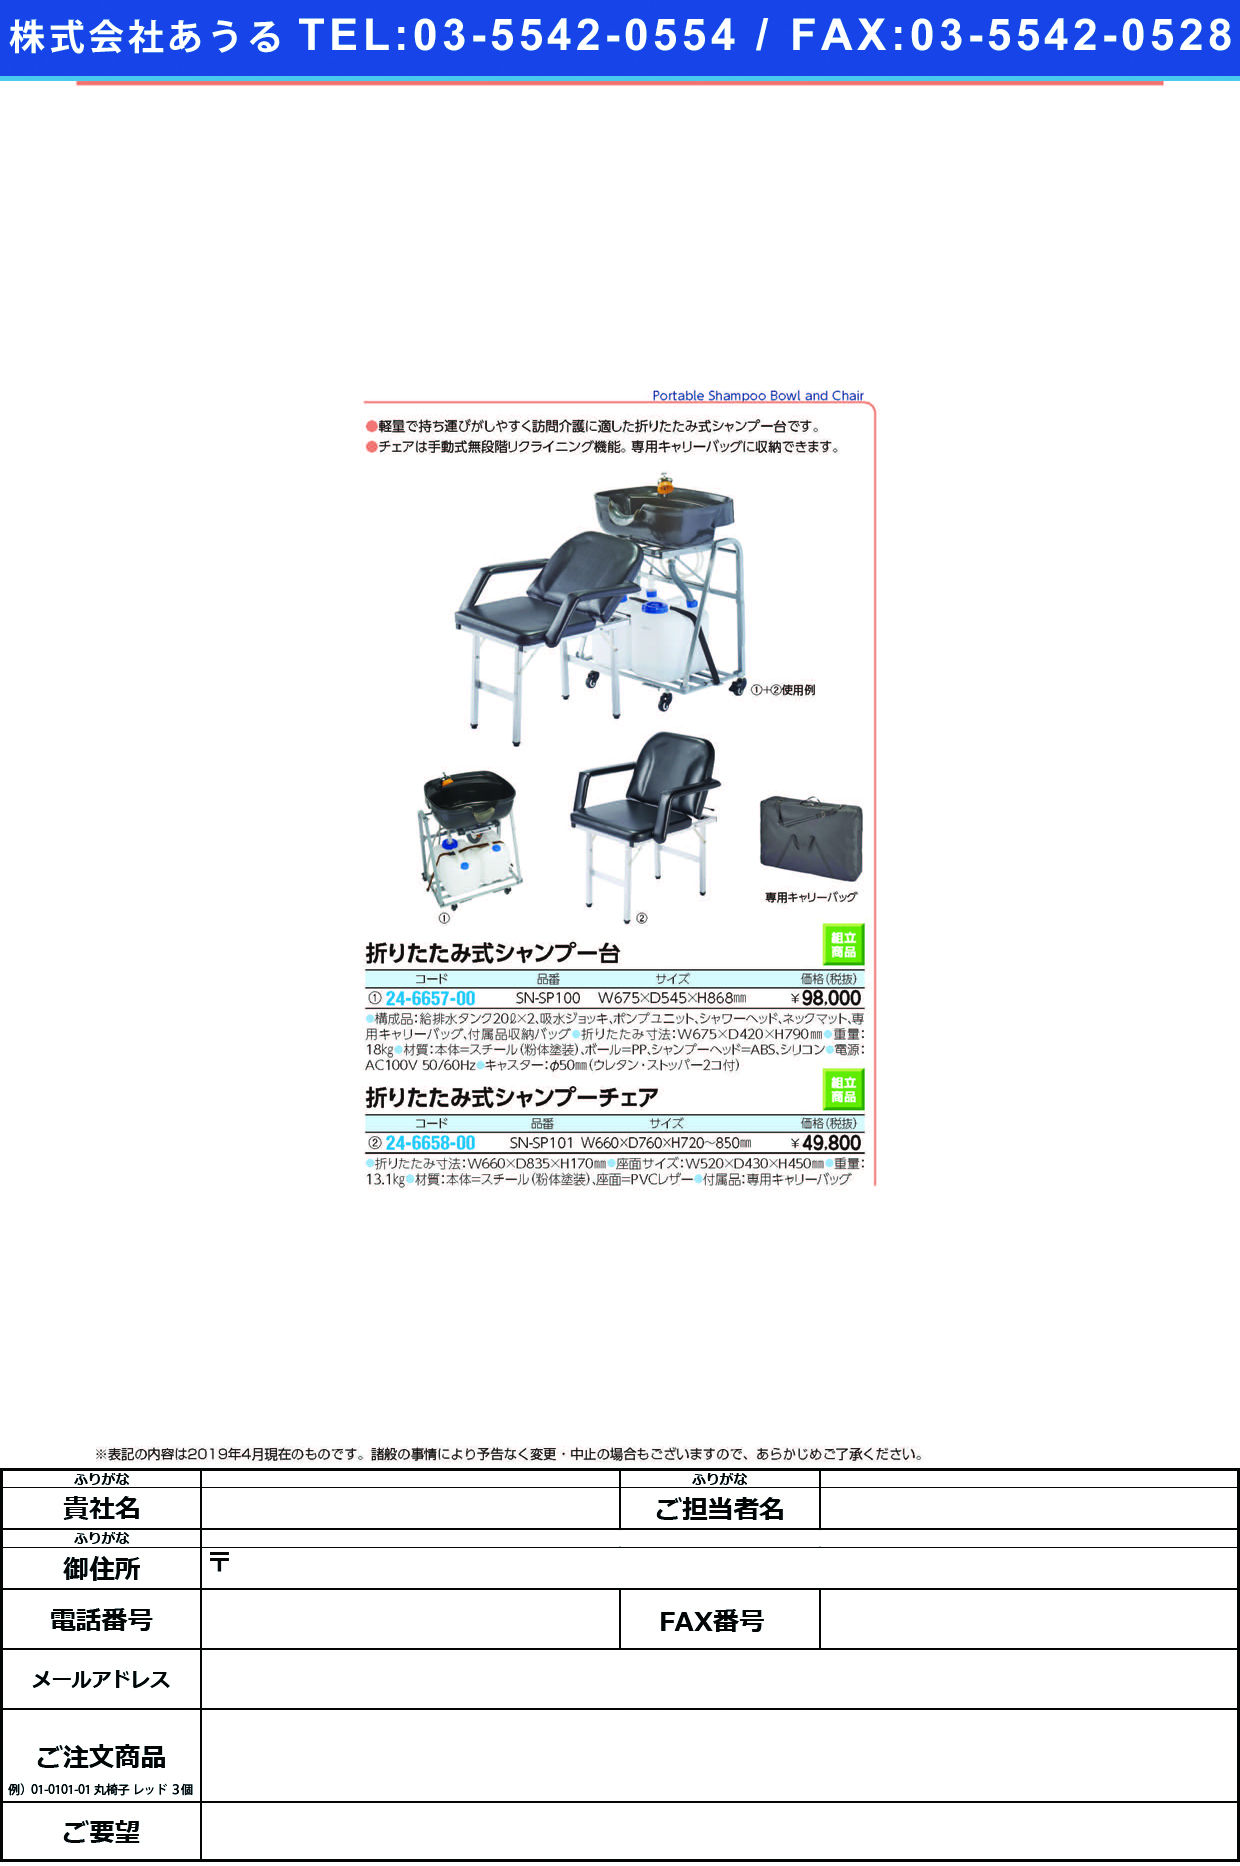 (24-6657-00)折りたたみ式シャンプー台 SN-SP100 ｵﾘﾀﾀﾐｼｷｼｬﾝﾌﾟｰﾀﾞｲｰﾝ【1式単位】【2019年カタログ商品】